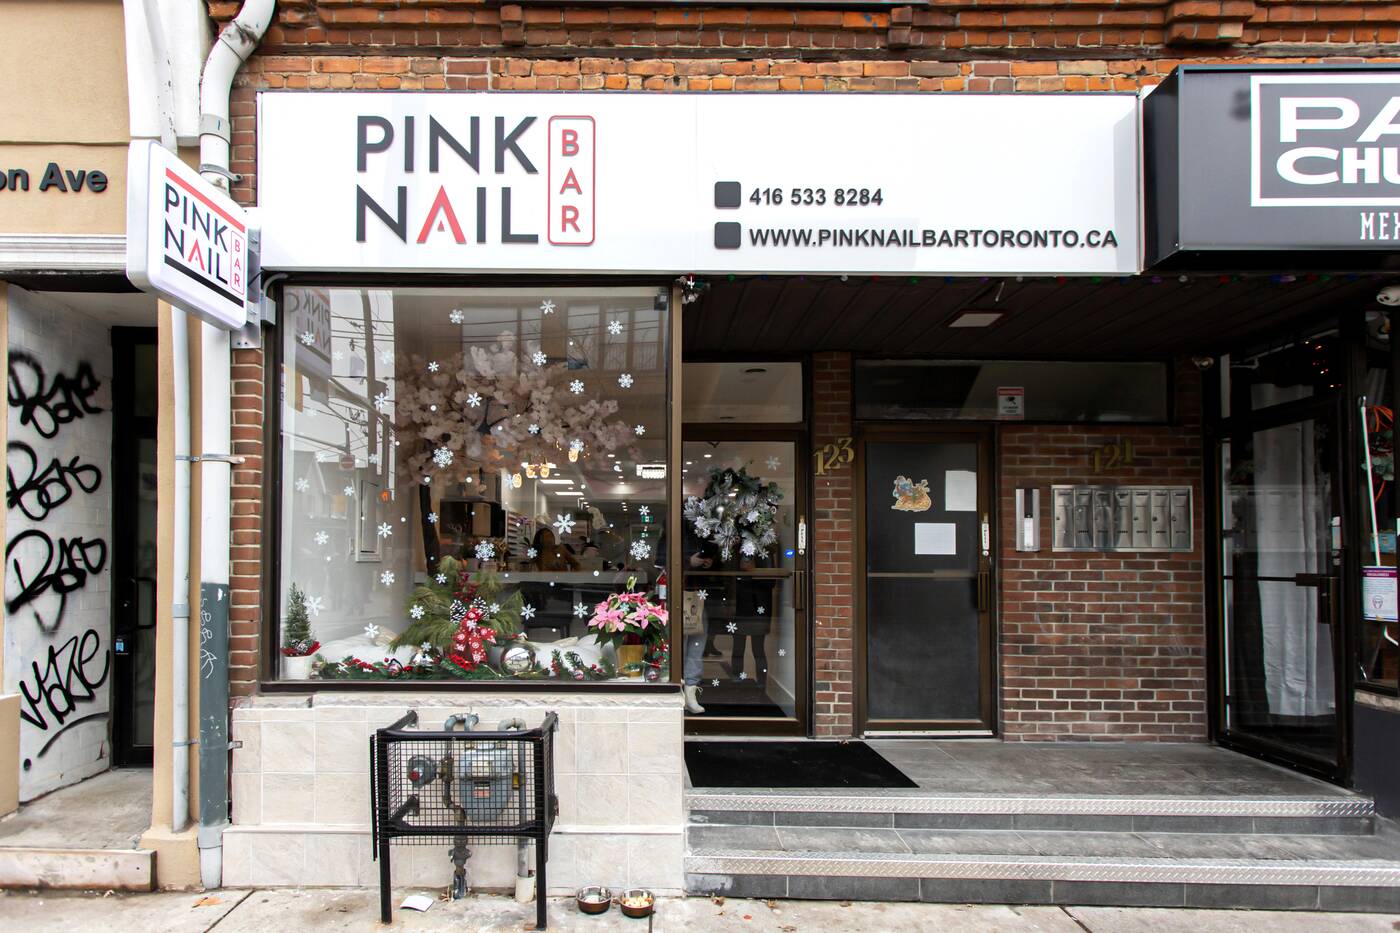 Pink Nail Bar Toronto